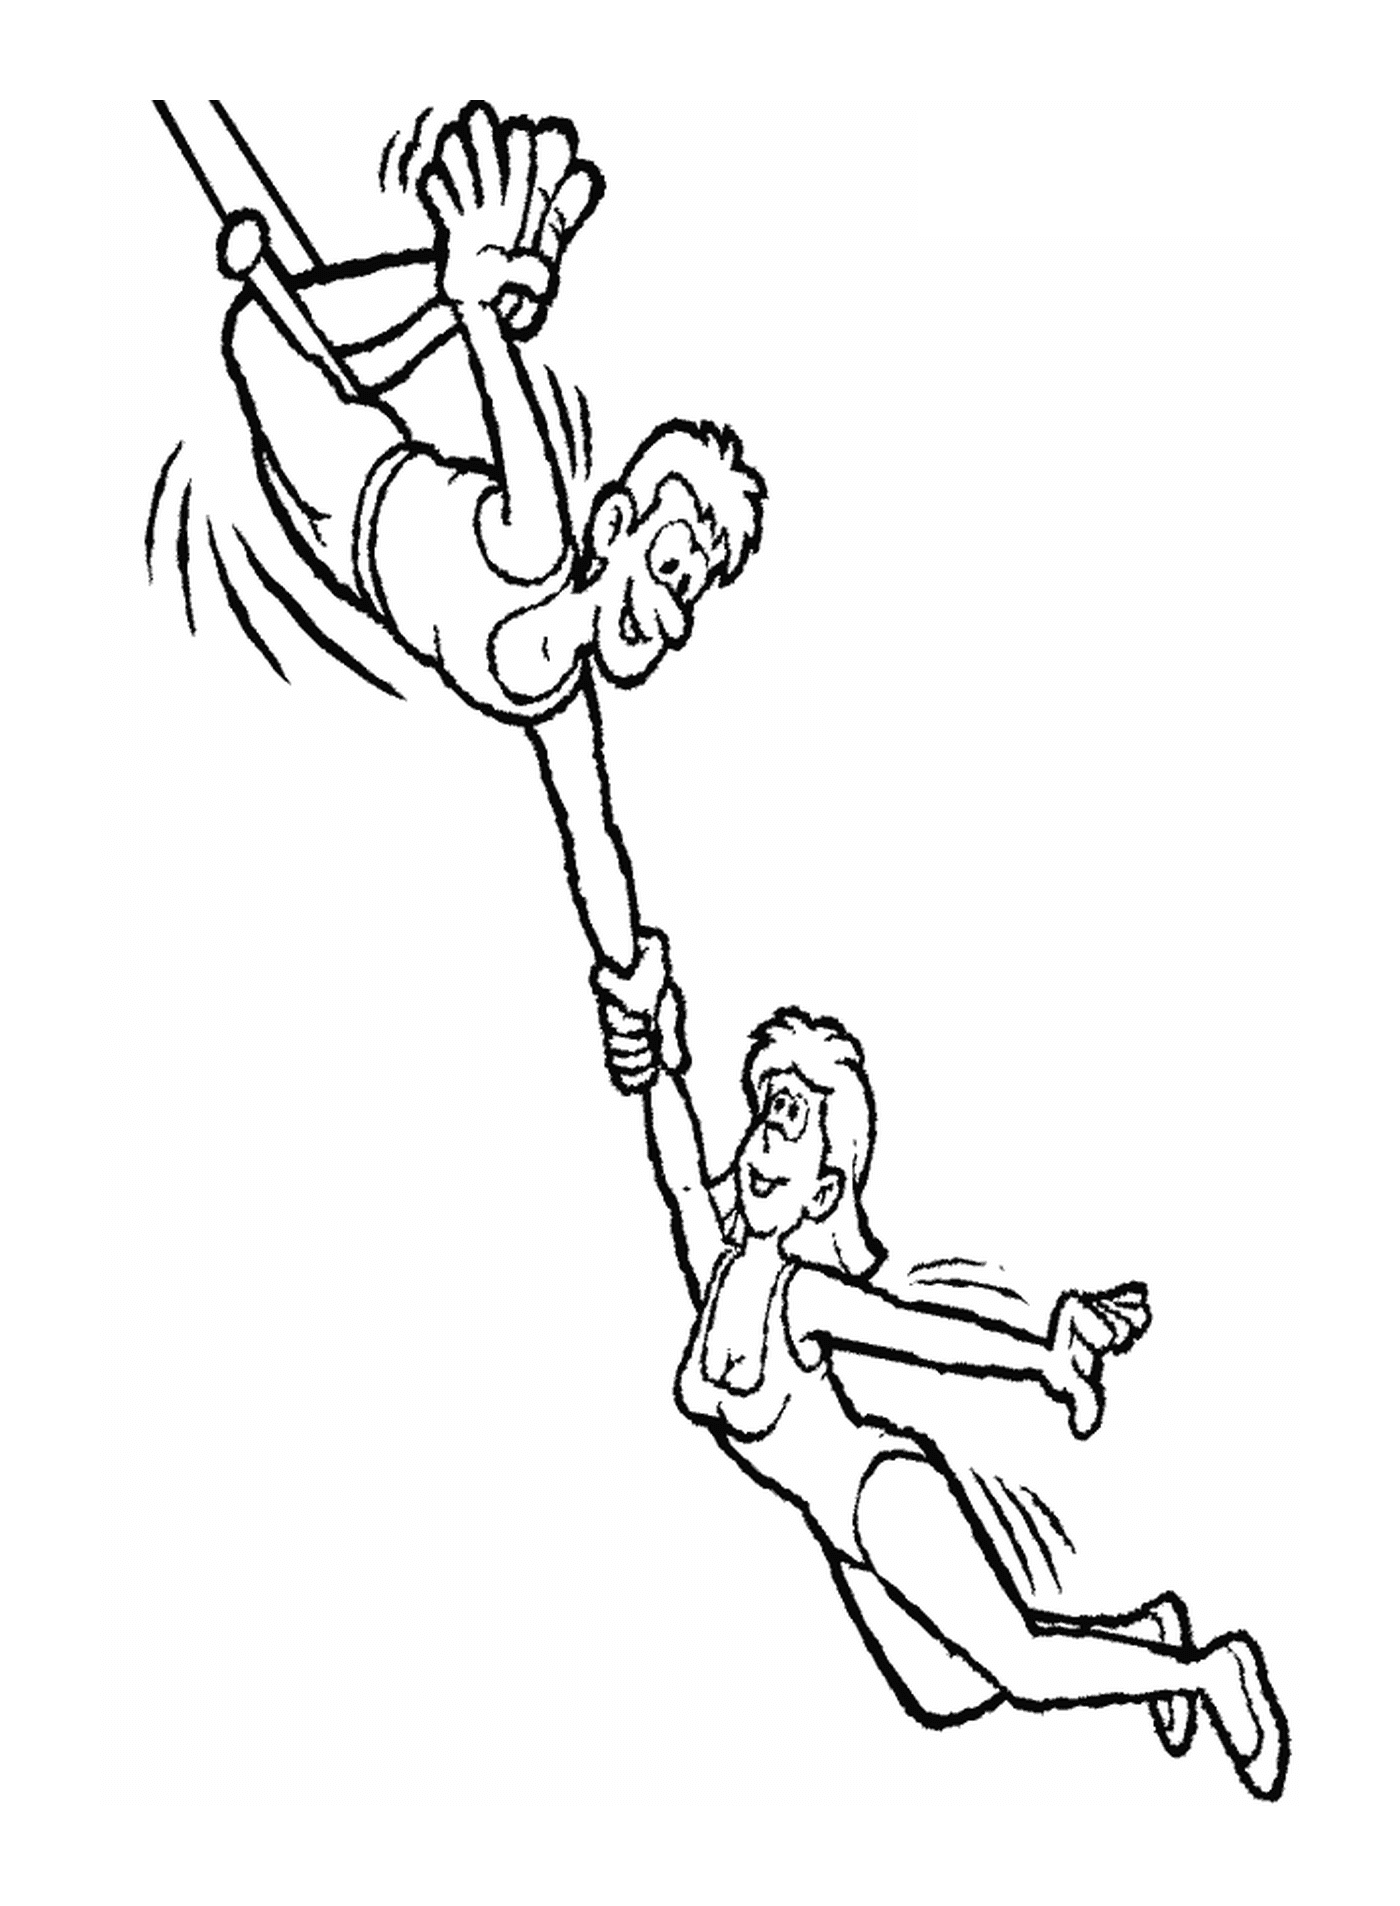  Un maschio e una trapezista femminile 